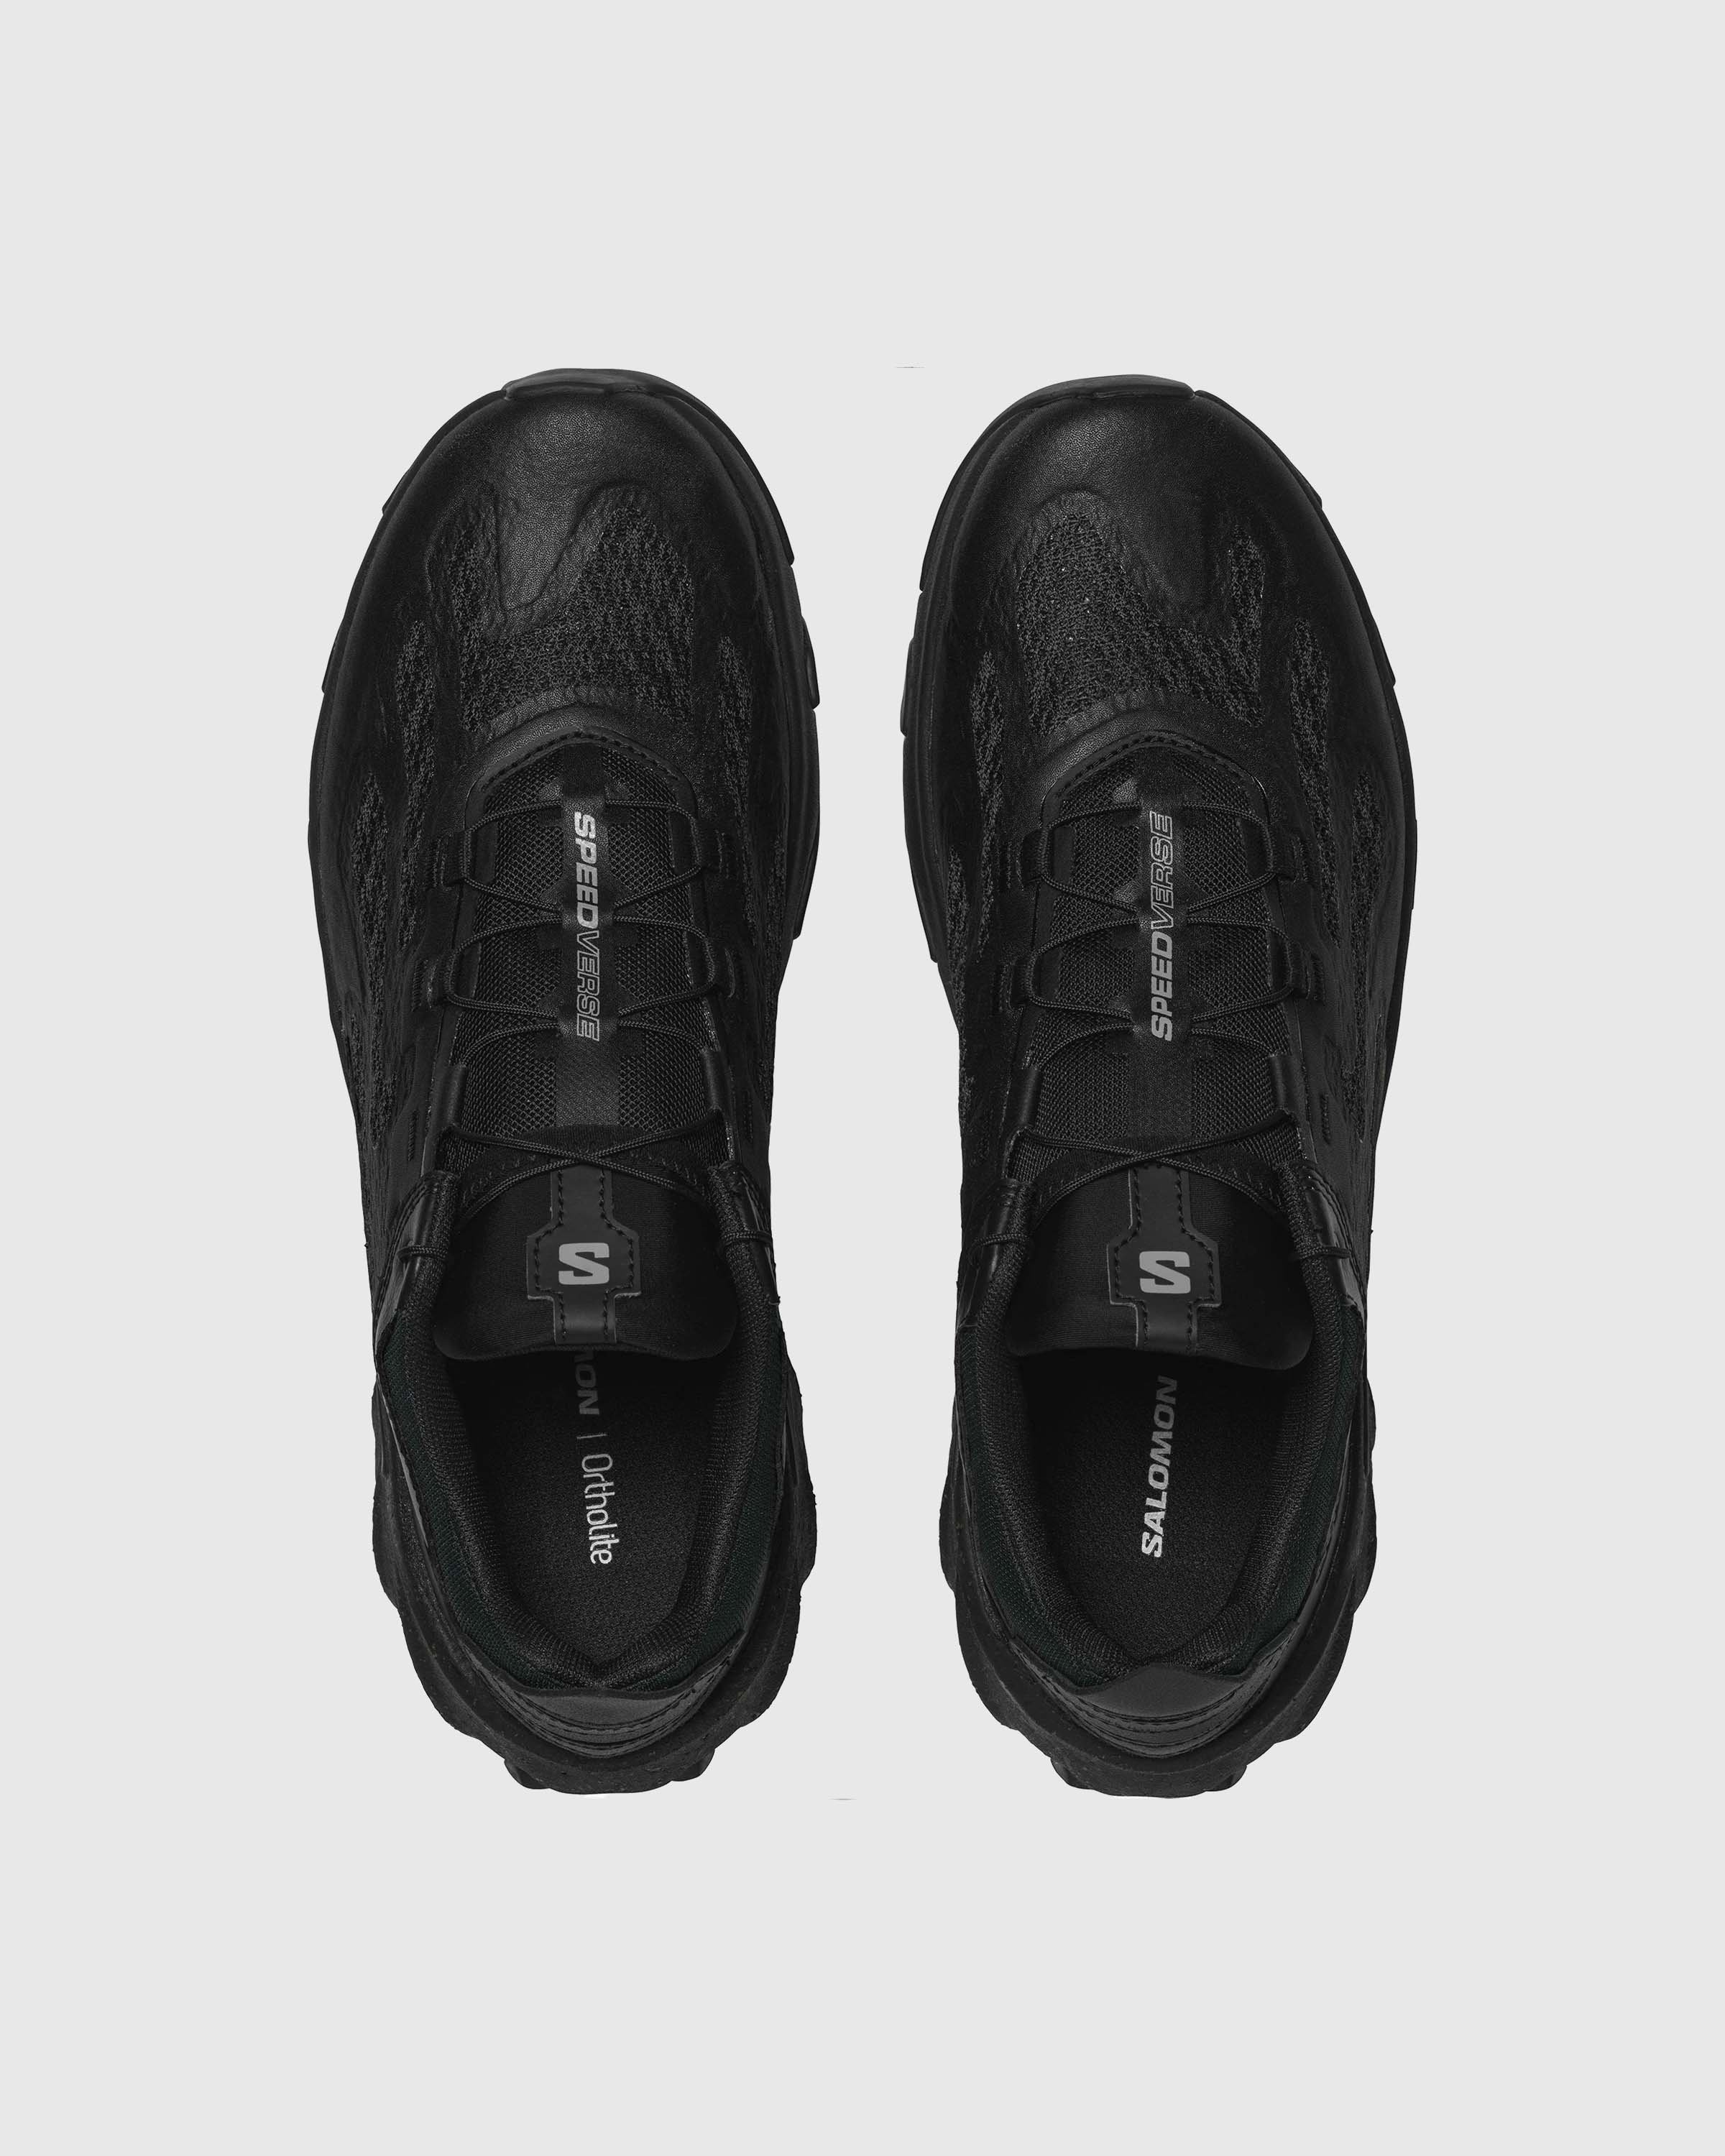 Salomon – Speedverse PRG Black/Alloy/Black - Low Top Sneakers - Black - Image 4